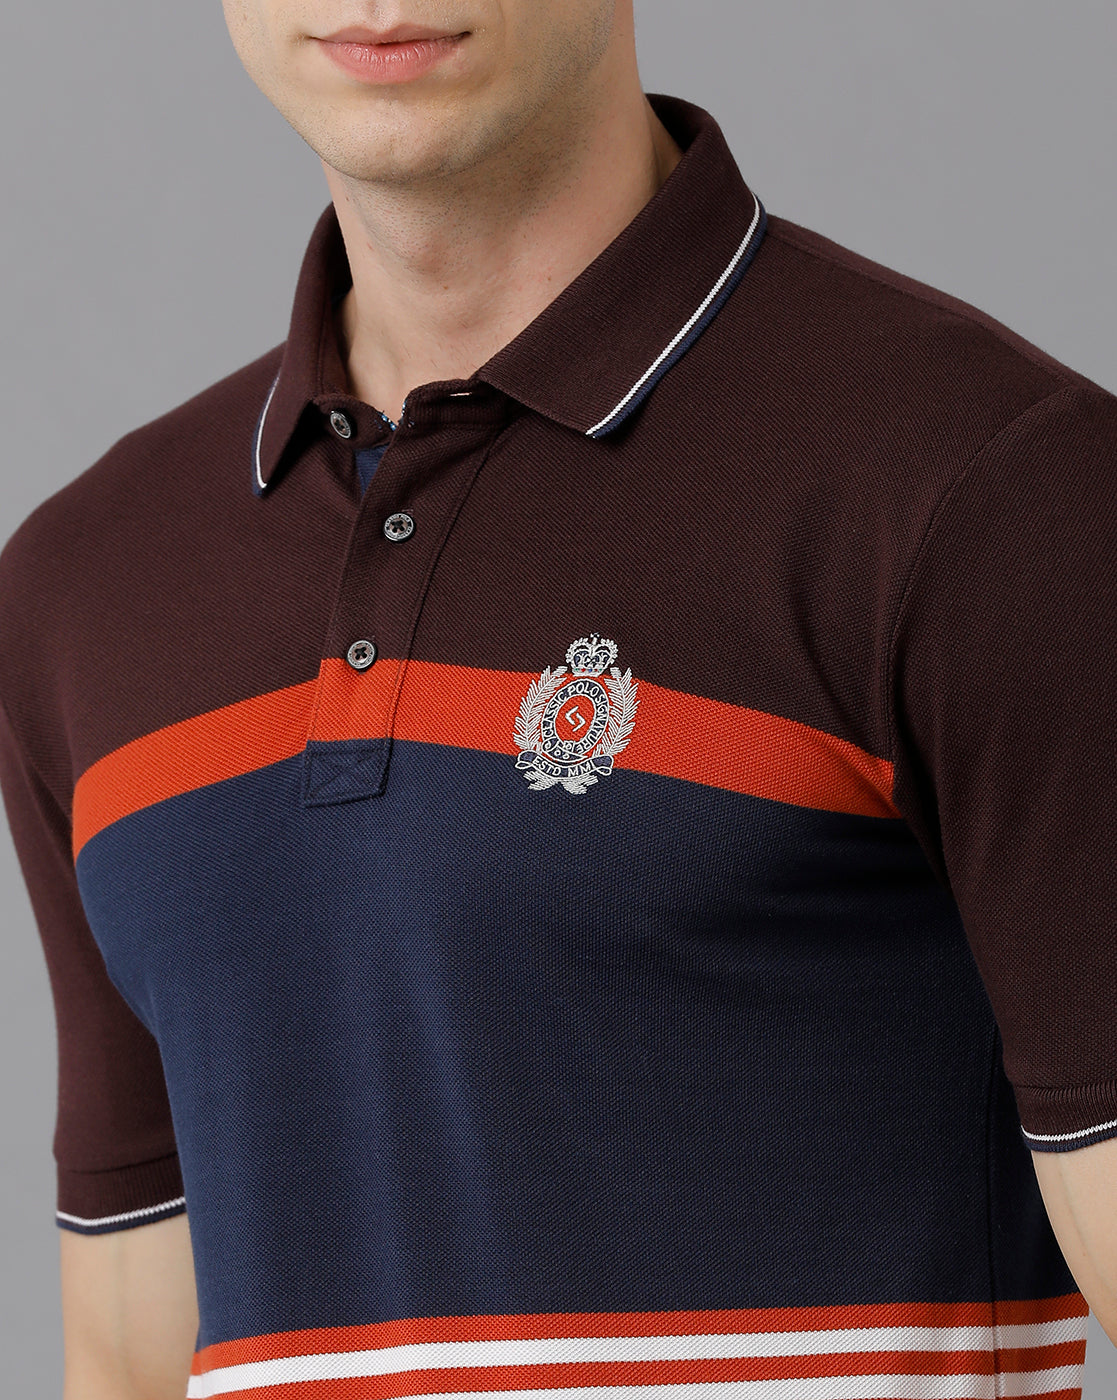 Classic Polo Men's Cotton Blend Striped Slim Fit Multicolor T-Shirt | Vta - 213 B